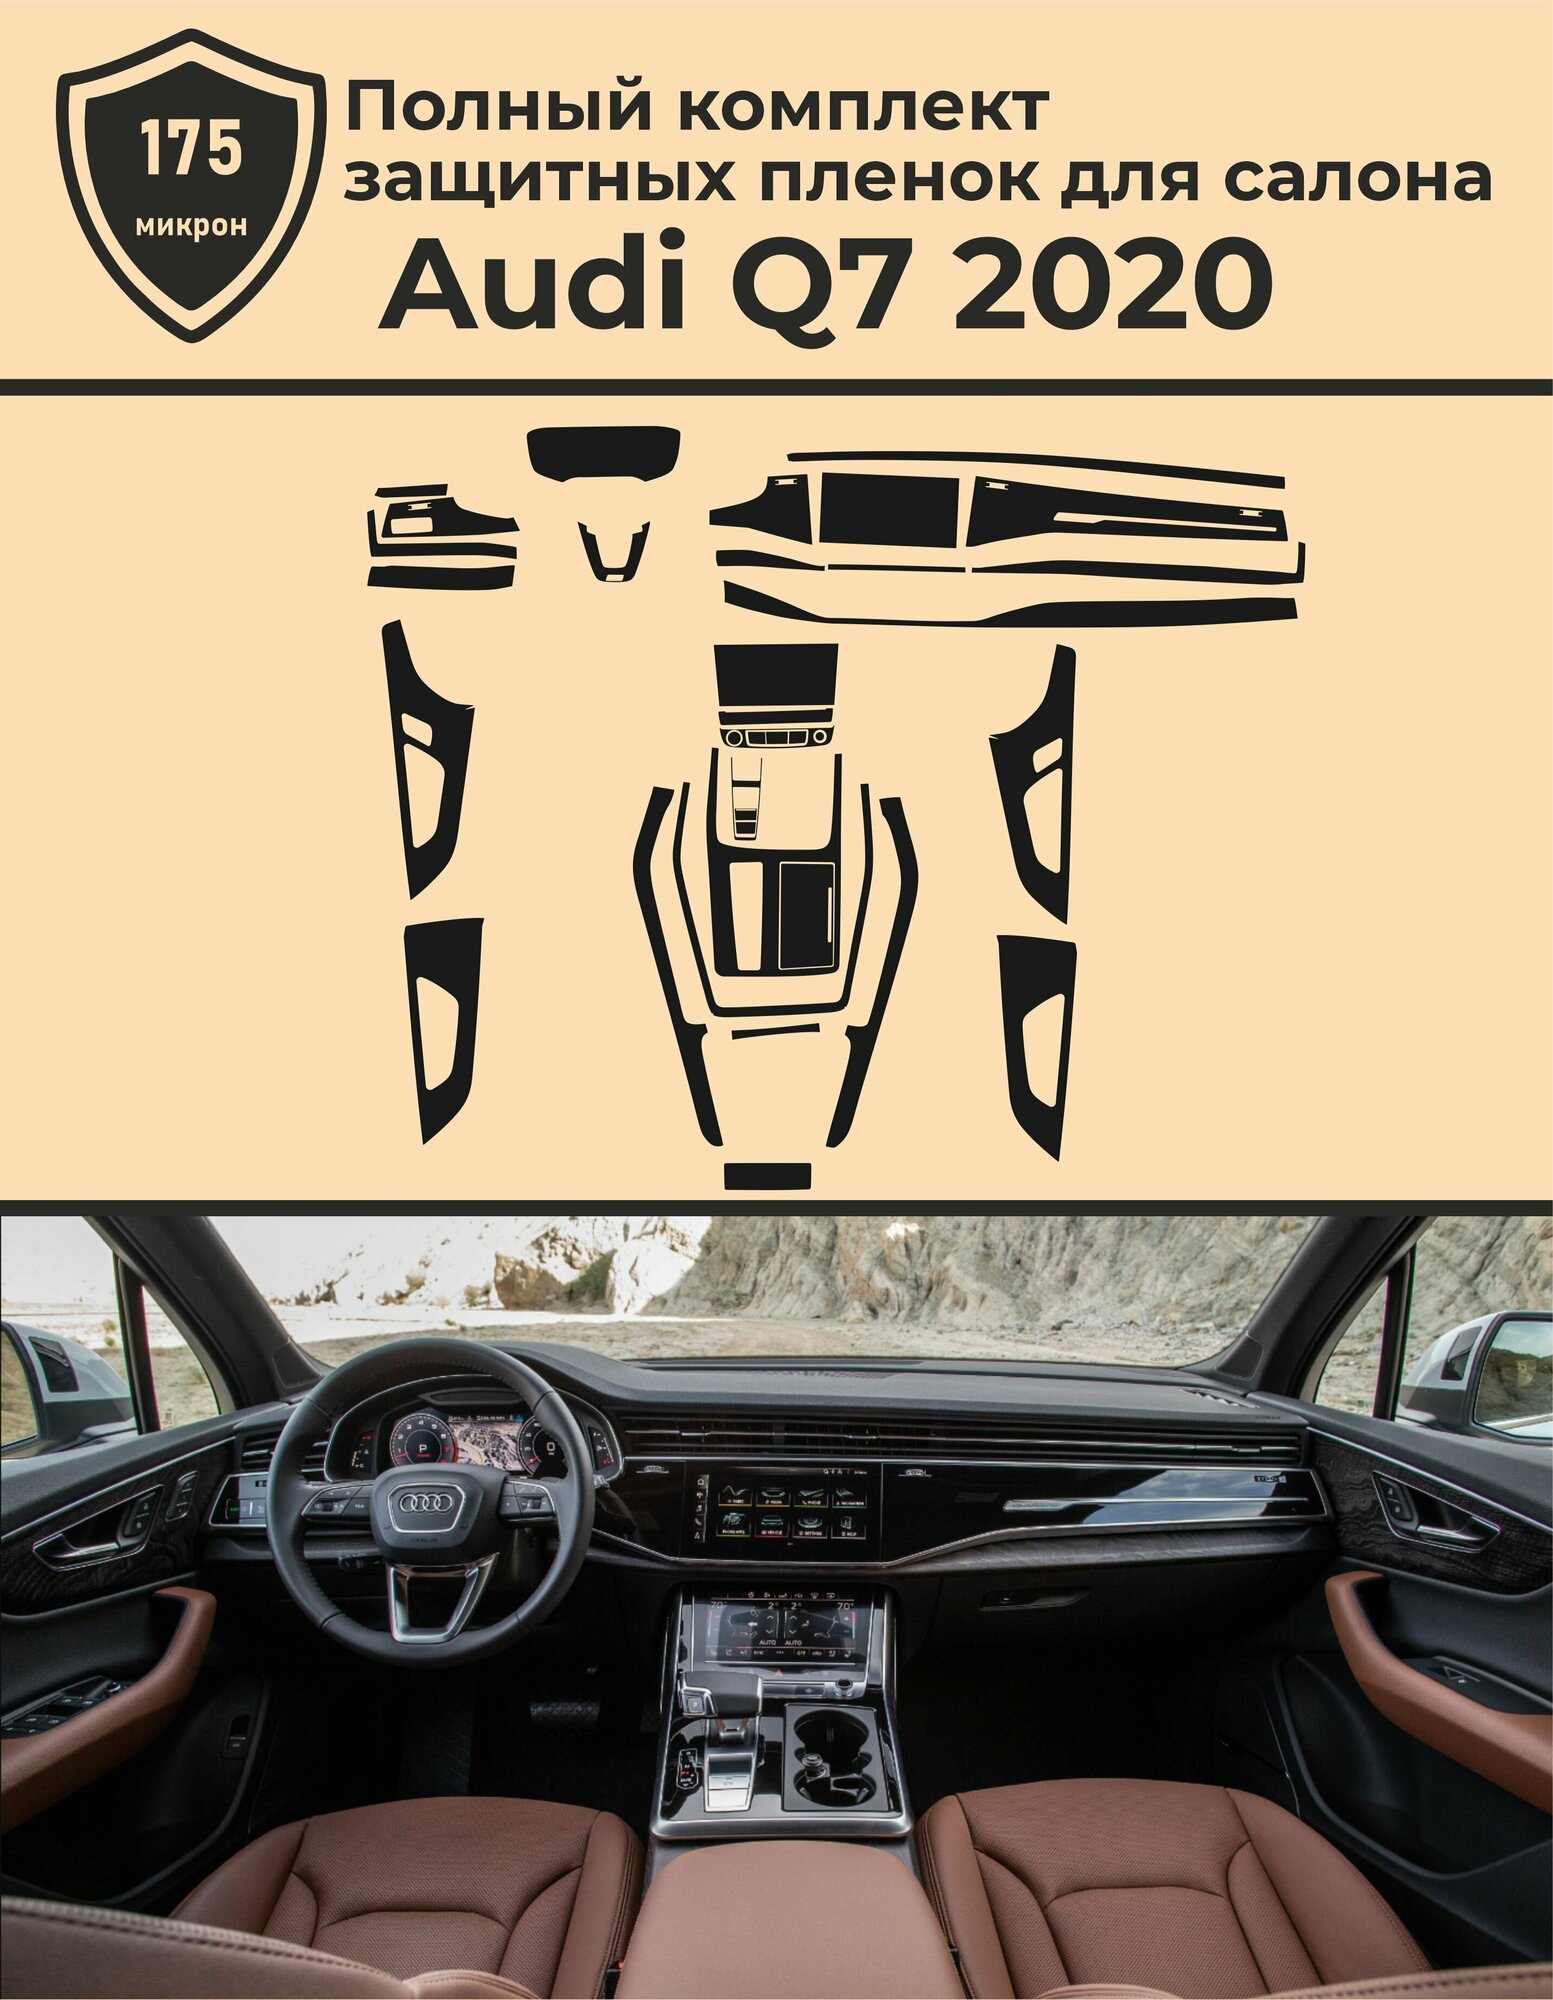 Audi Q7/Полный комплект защитных пленок для салона